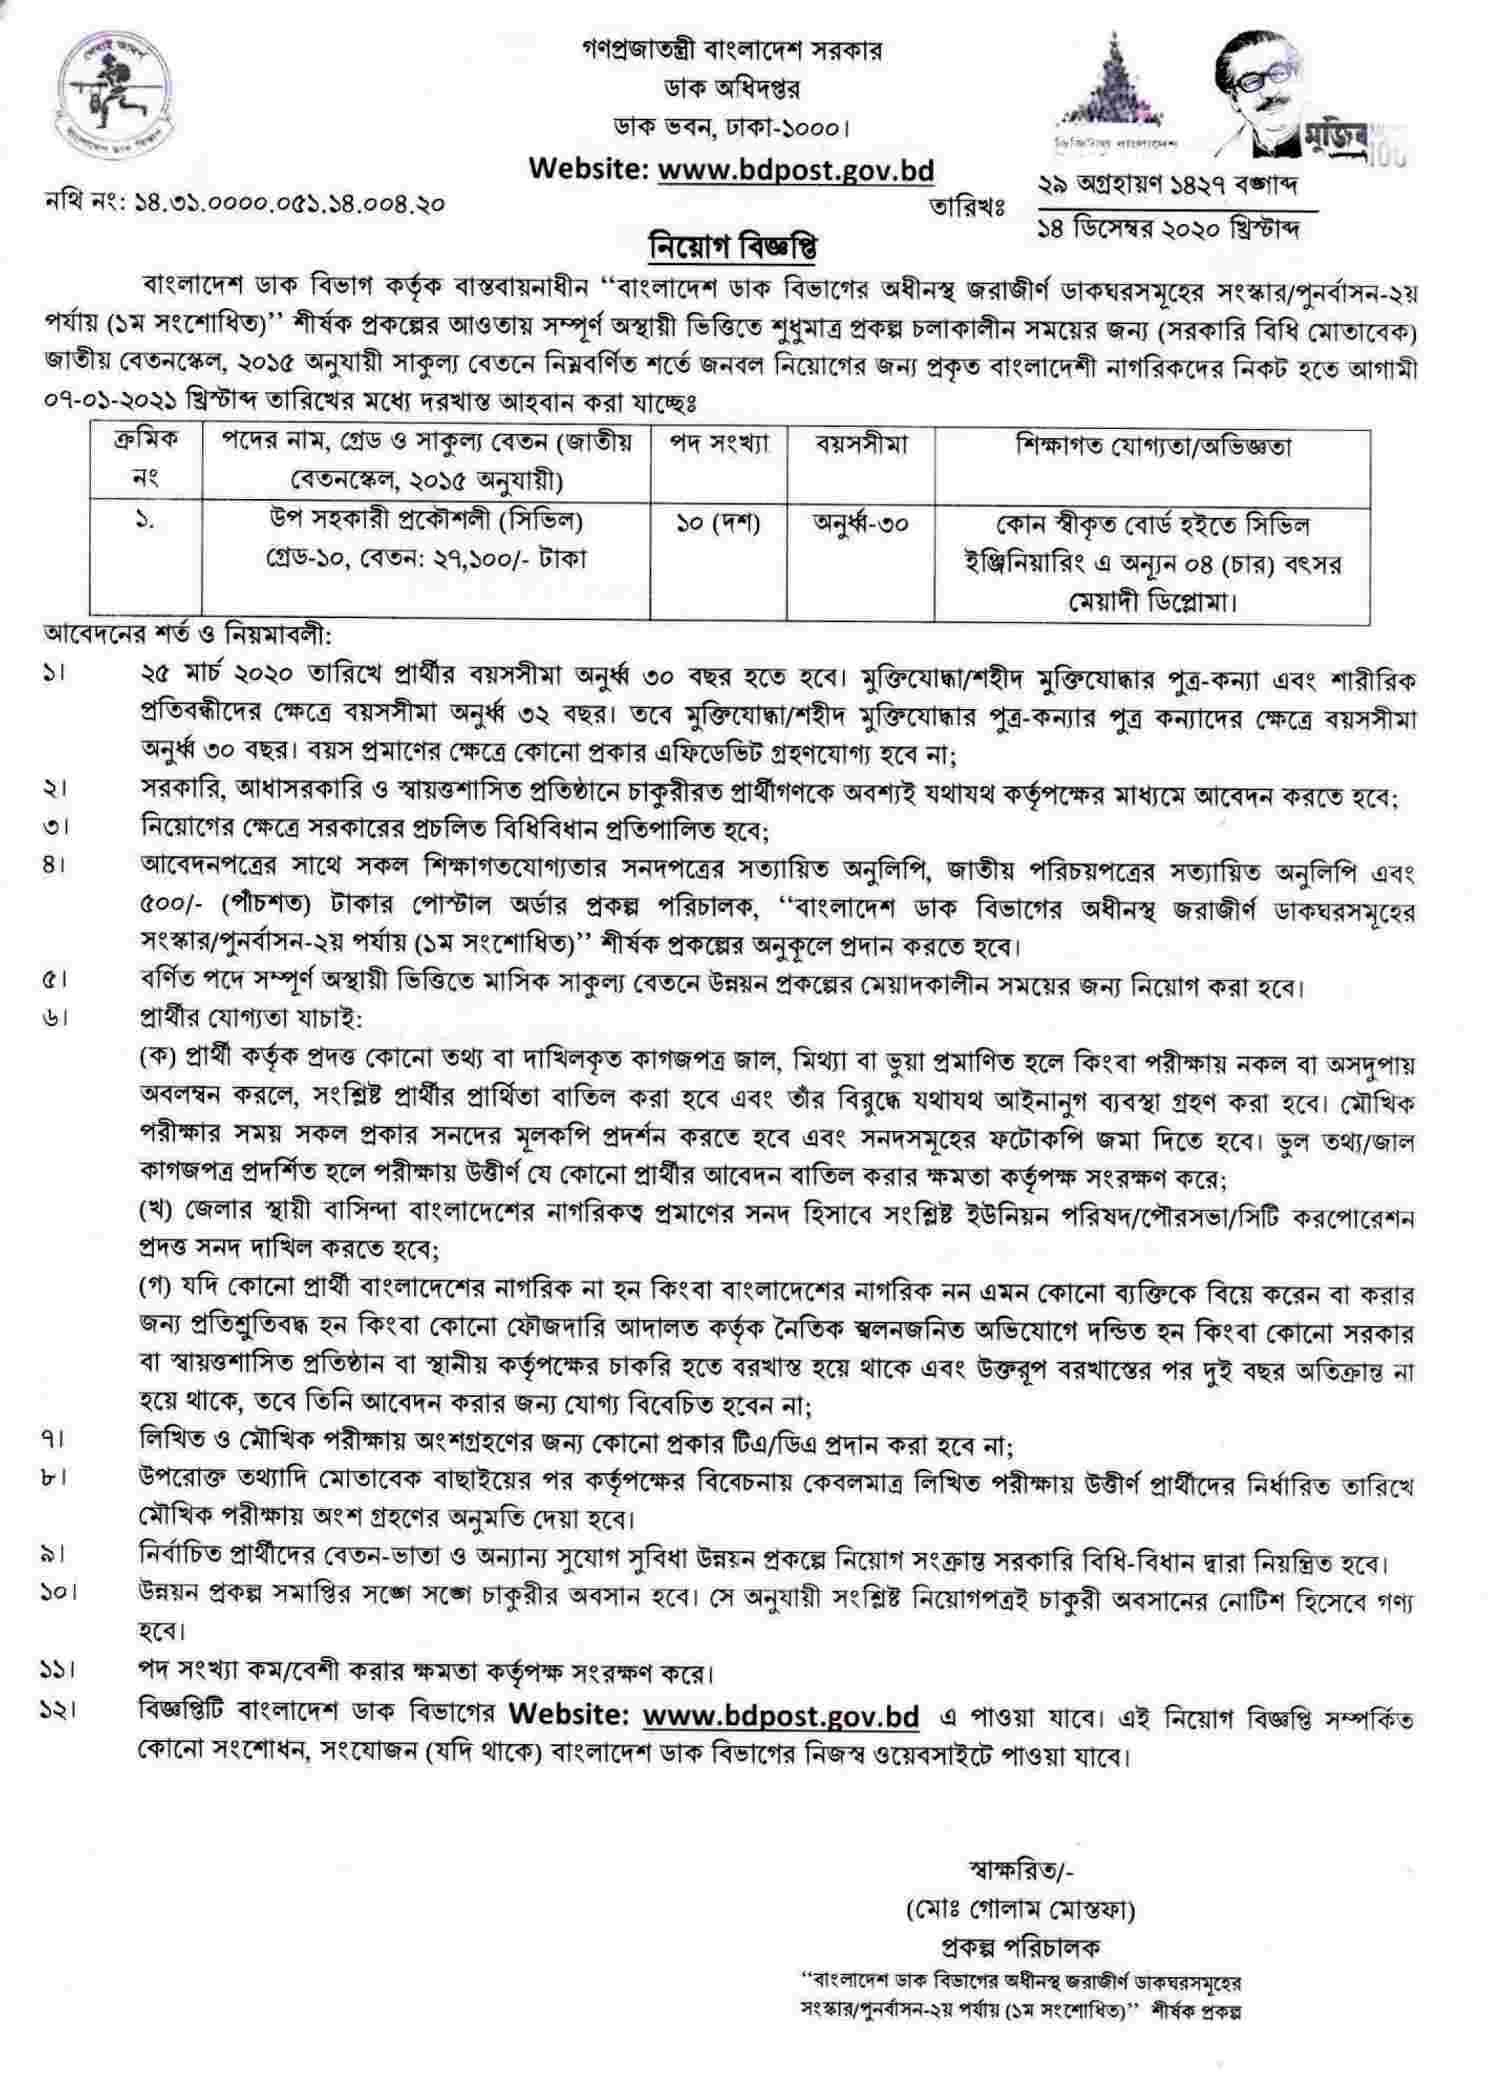 বাংলাদেশ ডাক বিভাগ নিয়োগ বিজ্ঞপ্তি, Post Office Job Circular 2021, Bangladesh Post Office Job Circular 2020, dak bivag niyog, ডাক অধিদপ্তর নিয়োগ বিজ্ঞপ্তি, Post office New job circular, Bangladesh Post Office Job Circular 2021